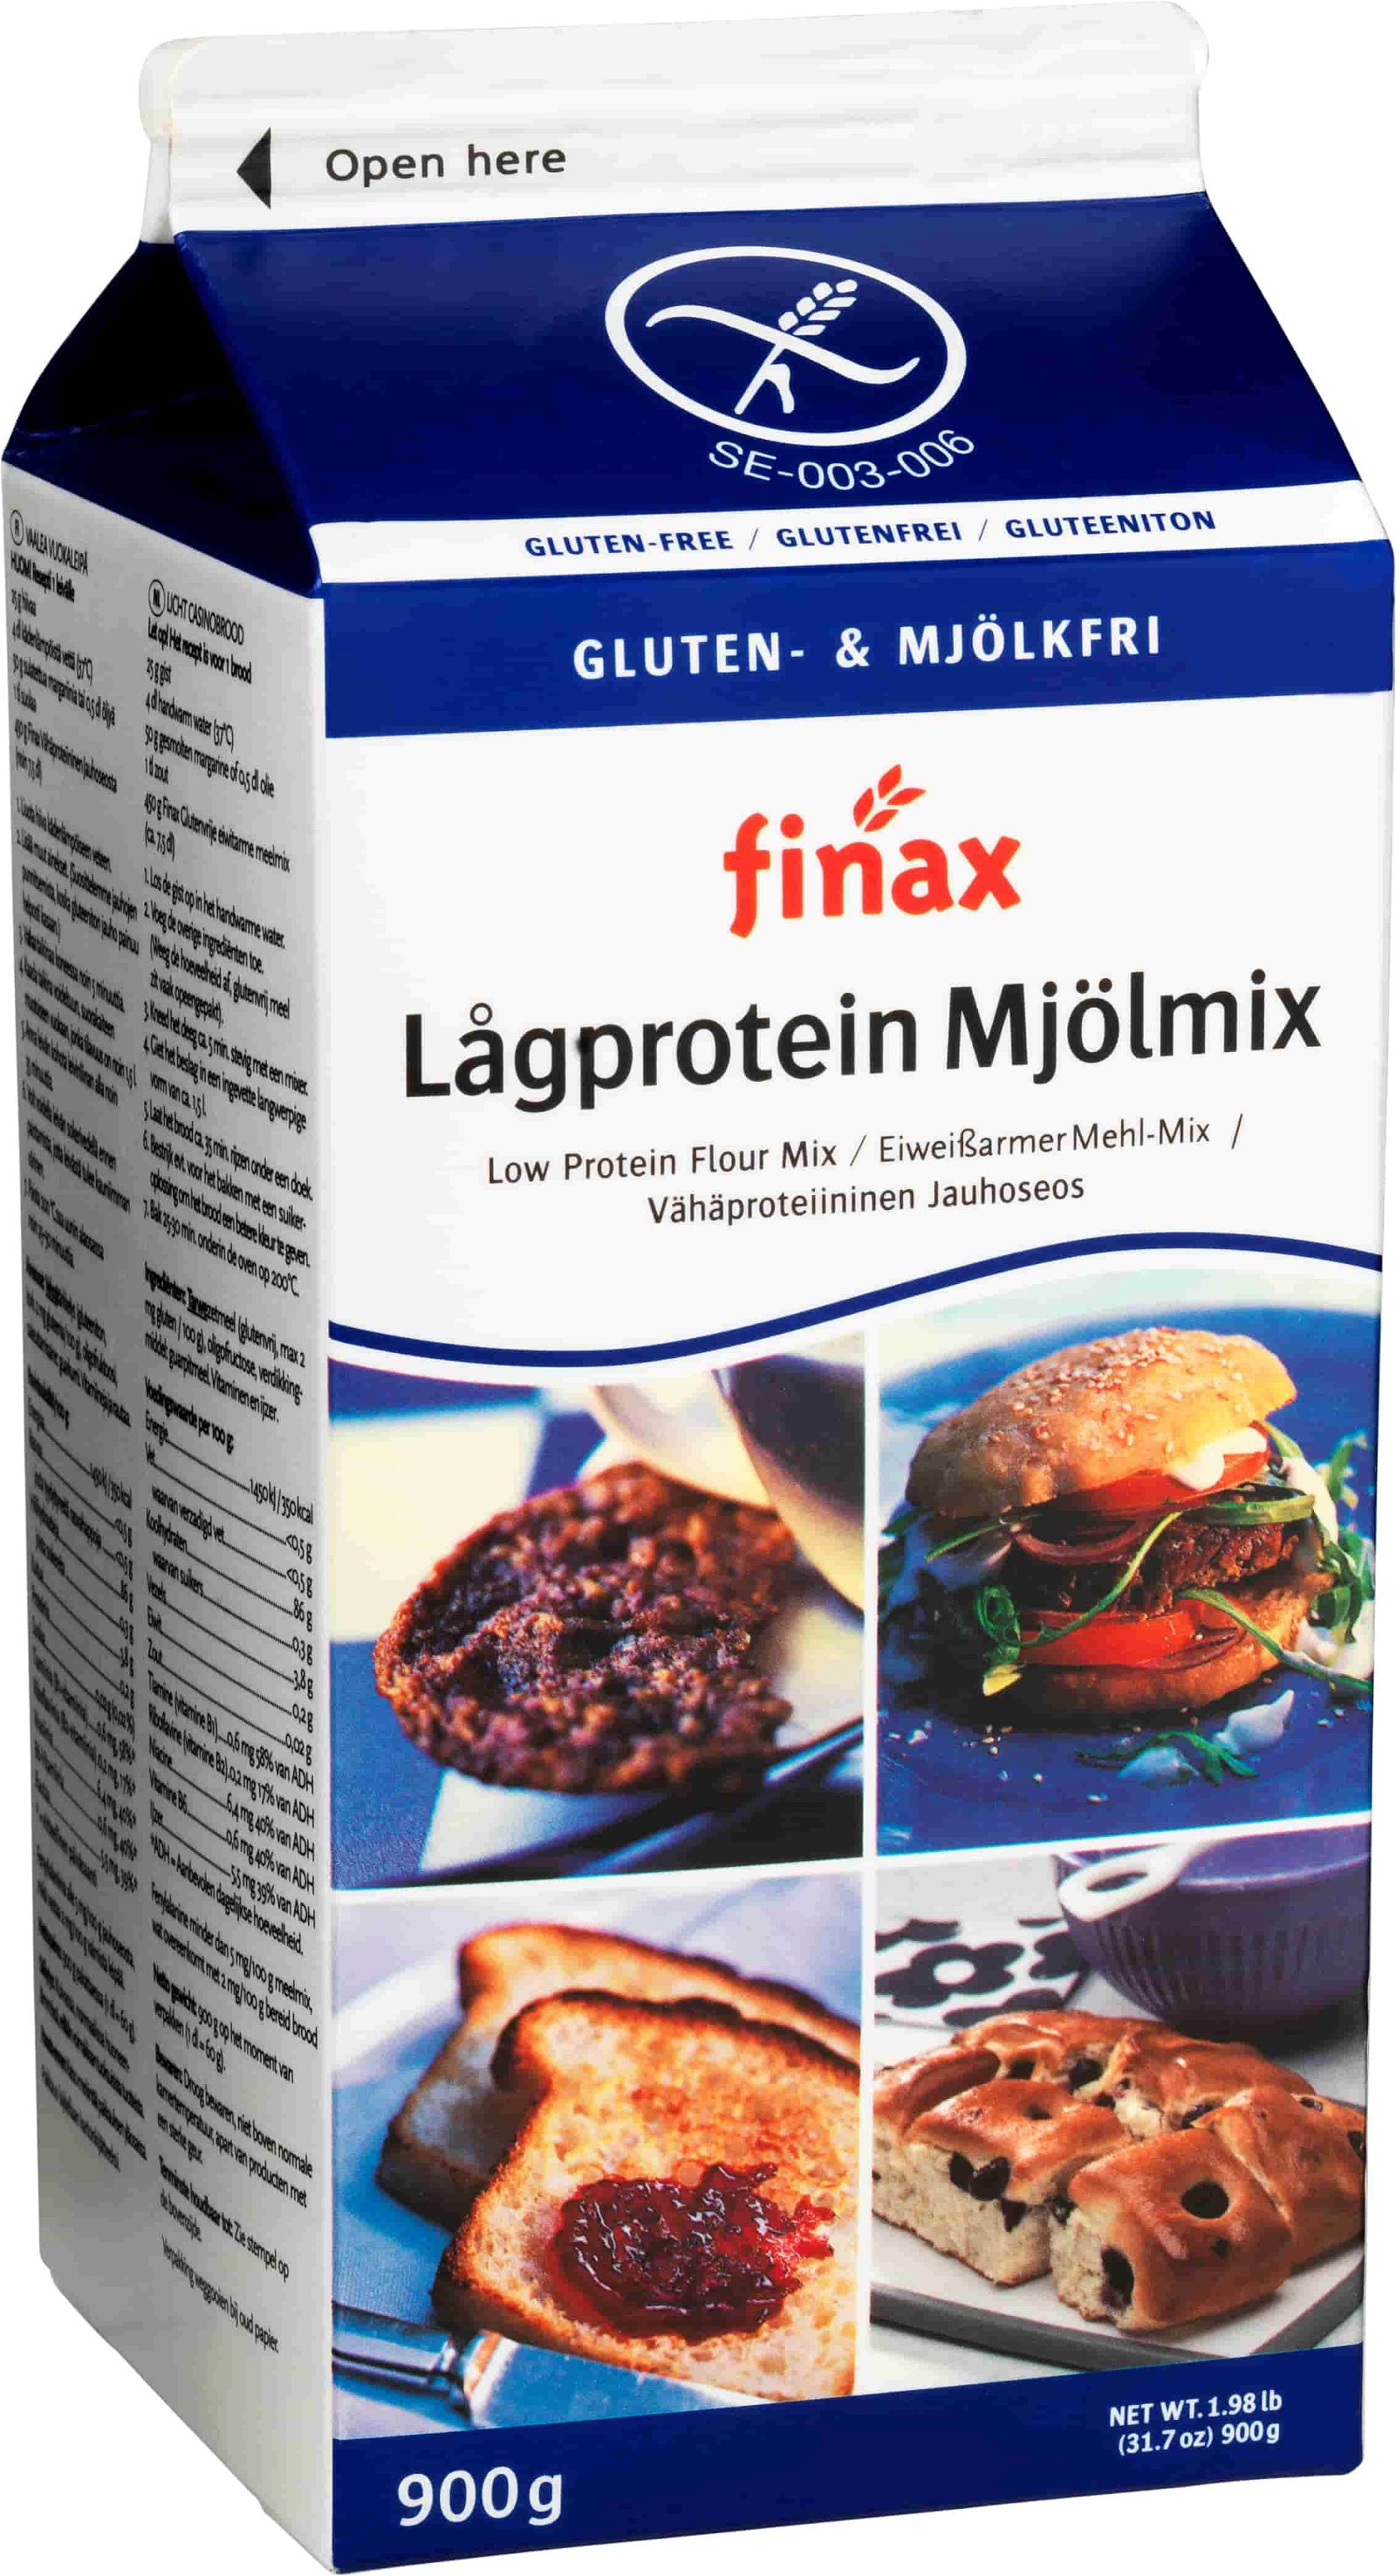 Finax blue - glutenfree flour  900g